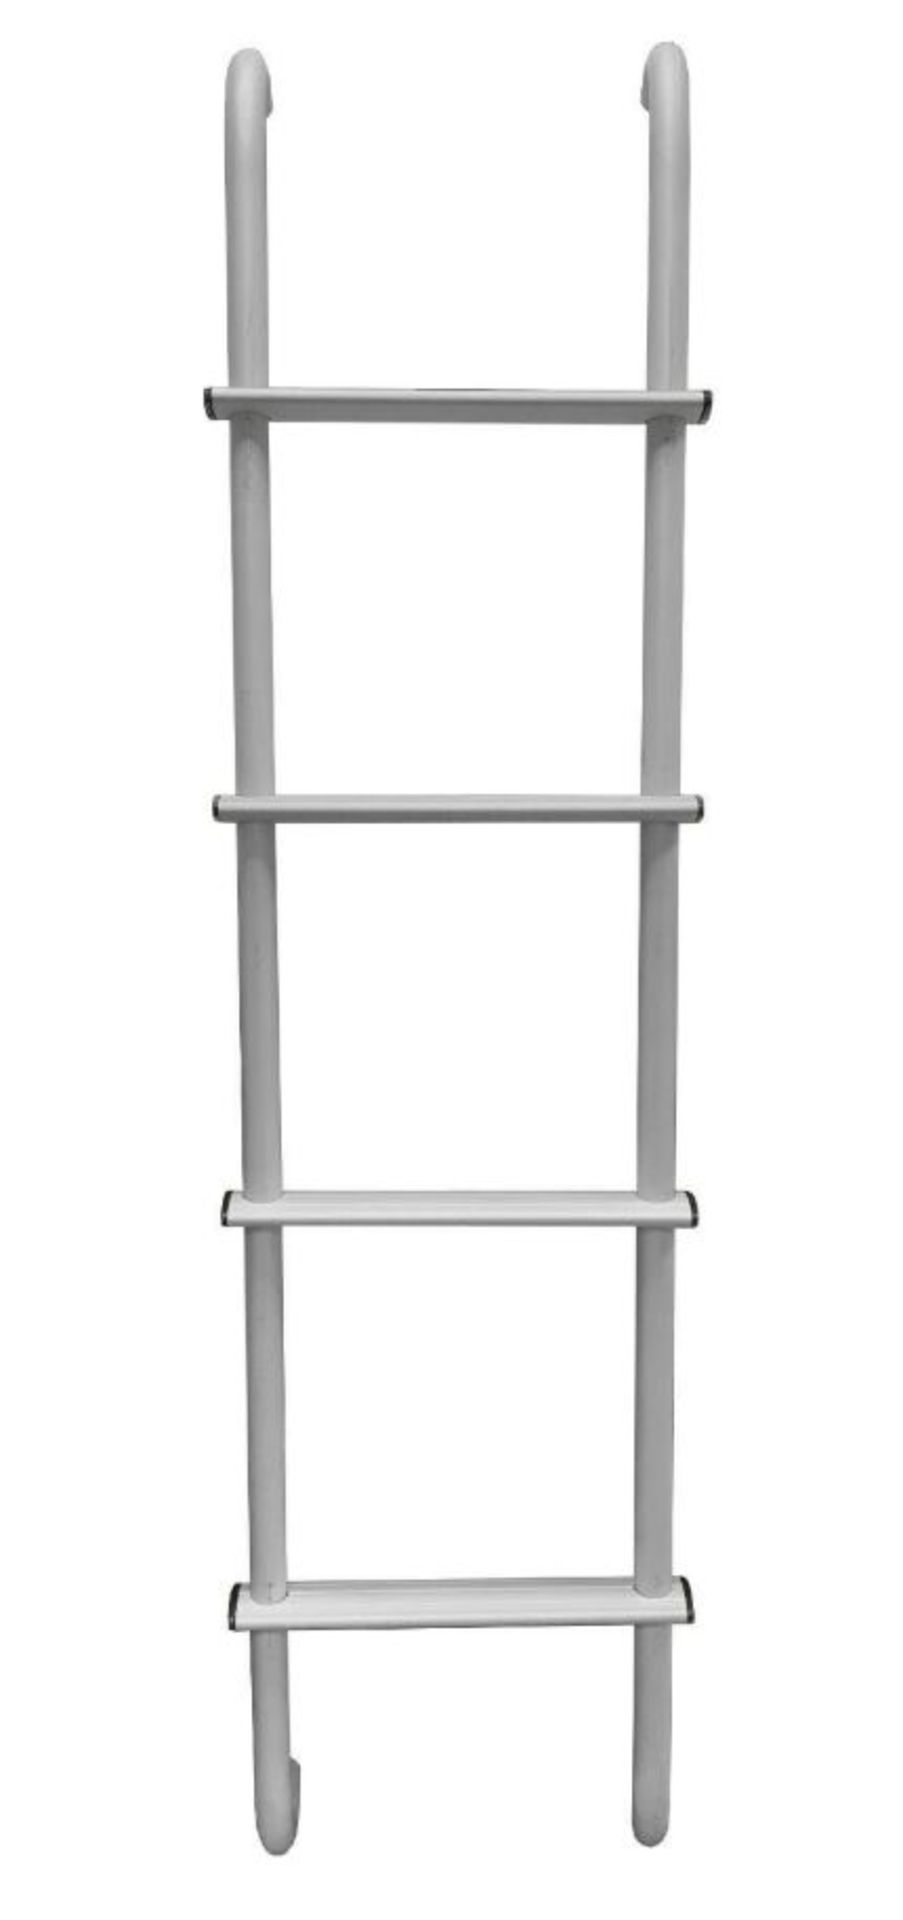 5 X 1290Mm X 250Mm Universal Aluminium Rear Roof Ladder (Zziearl)